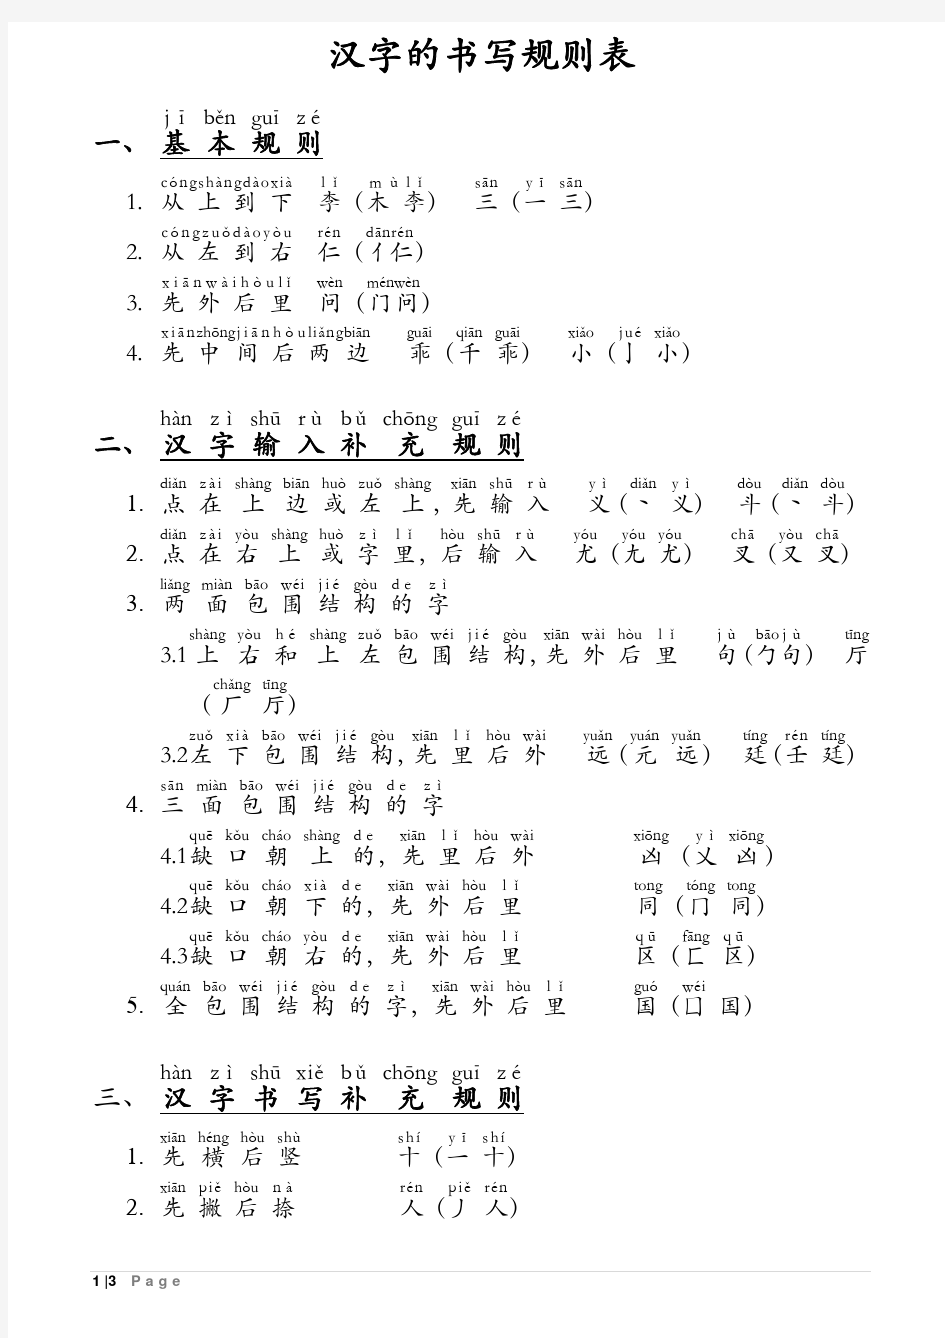 汉字的书写规则表